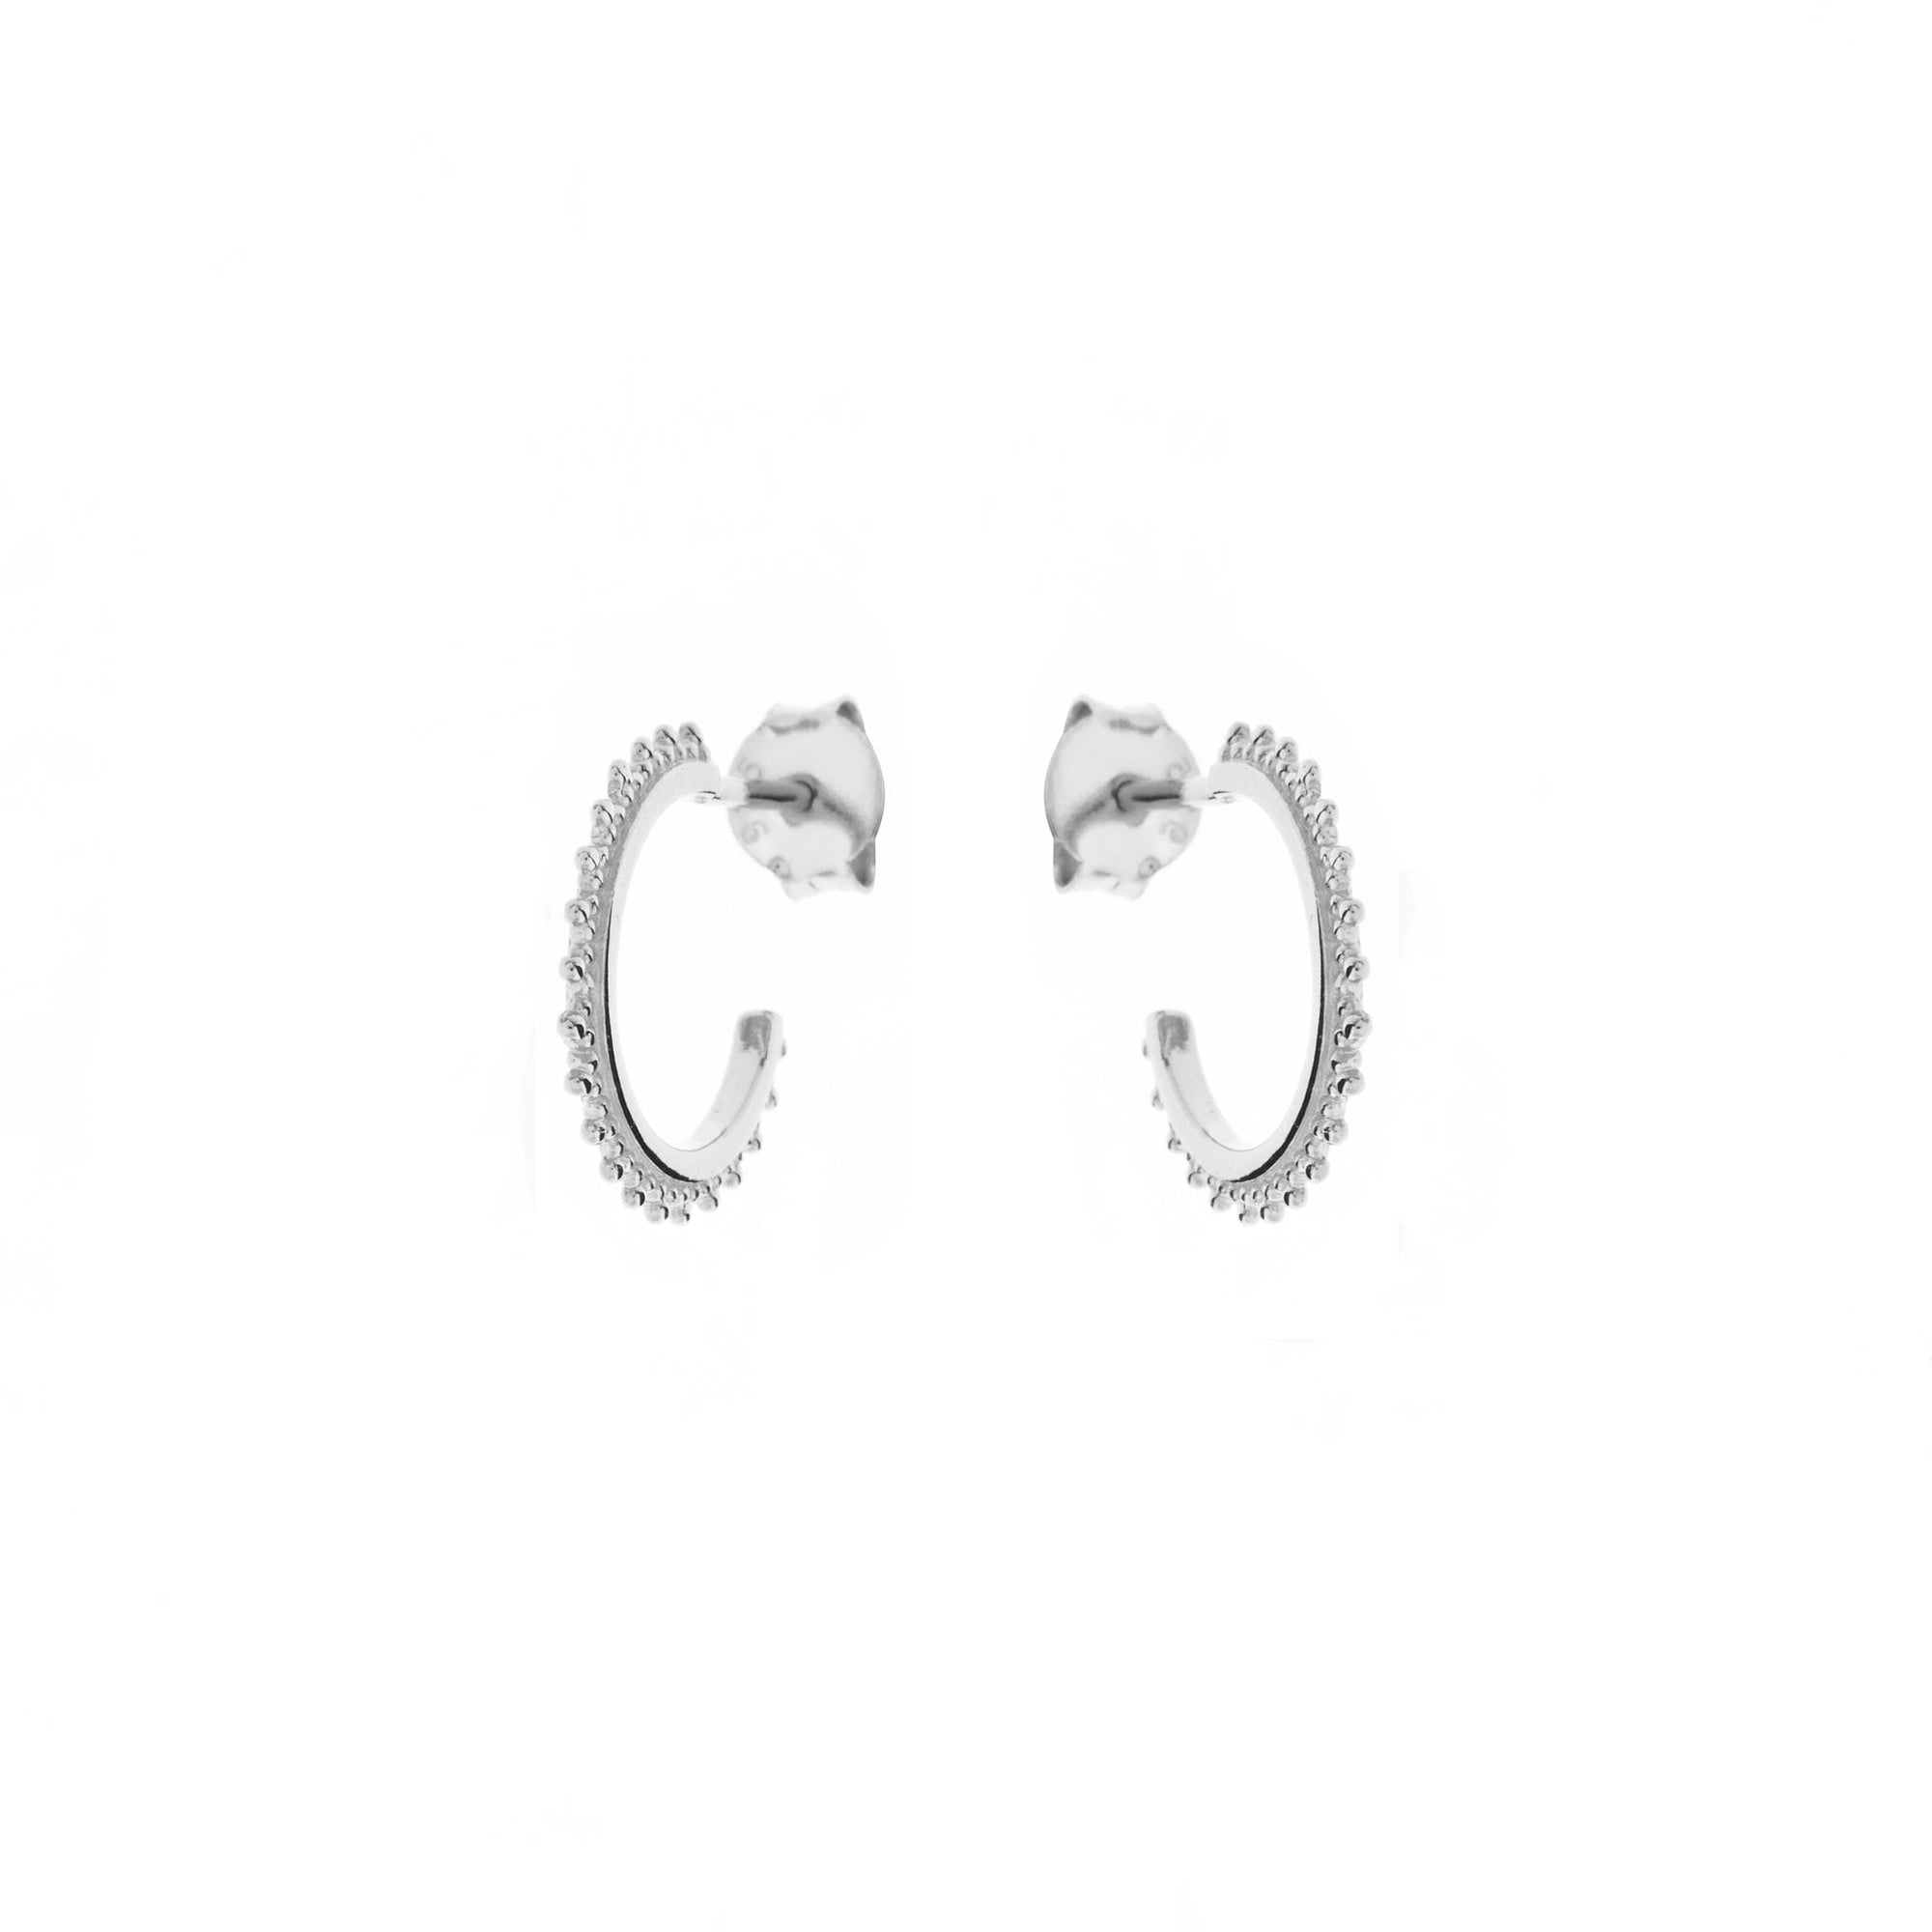 Duo Jewellery Earrings Duo Enchanted Hoop Earrings